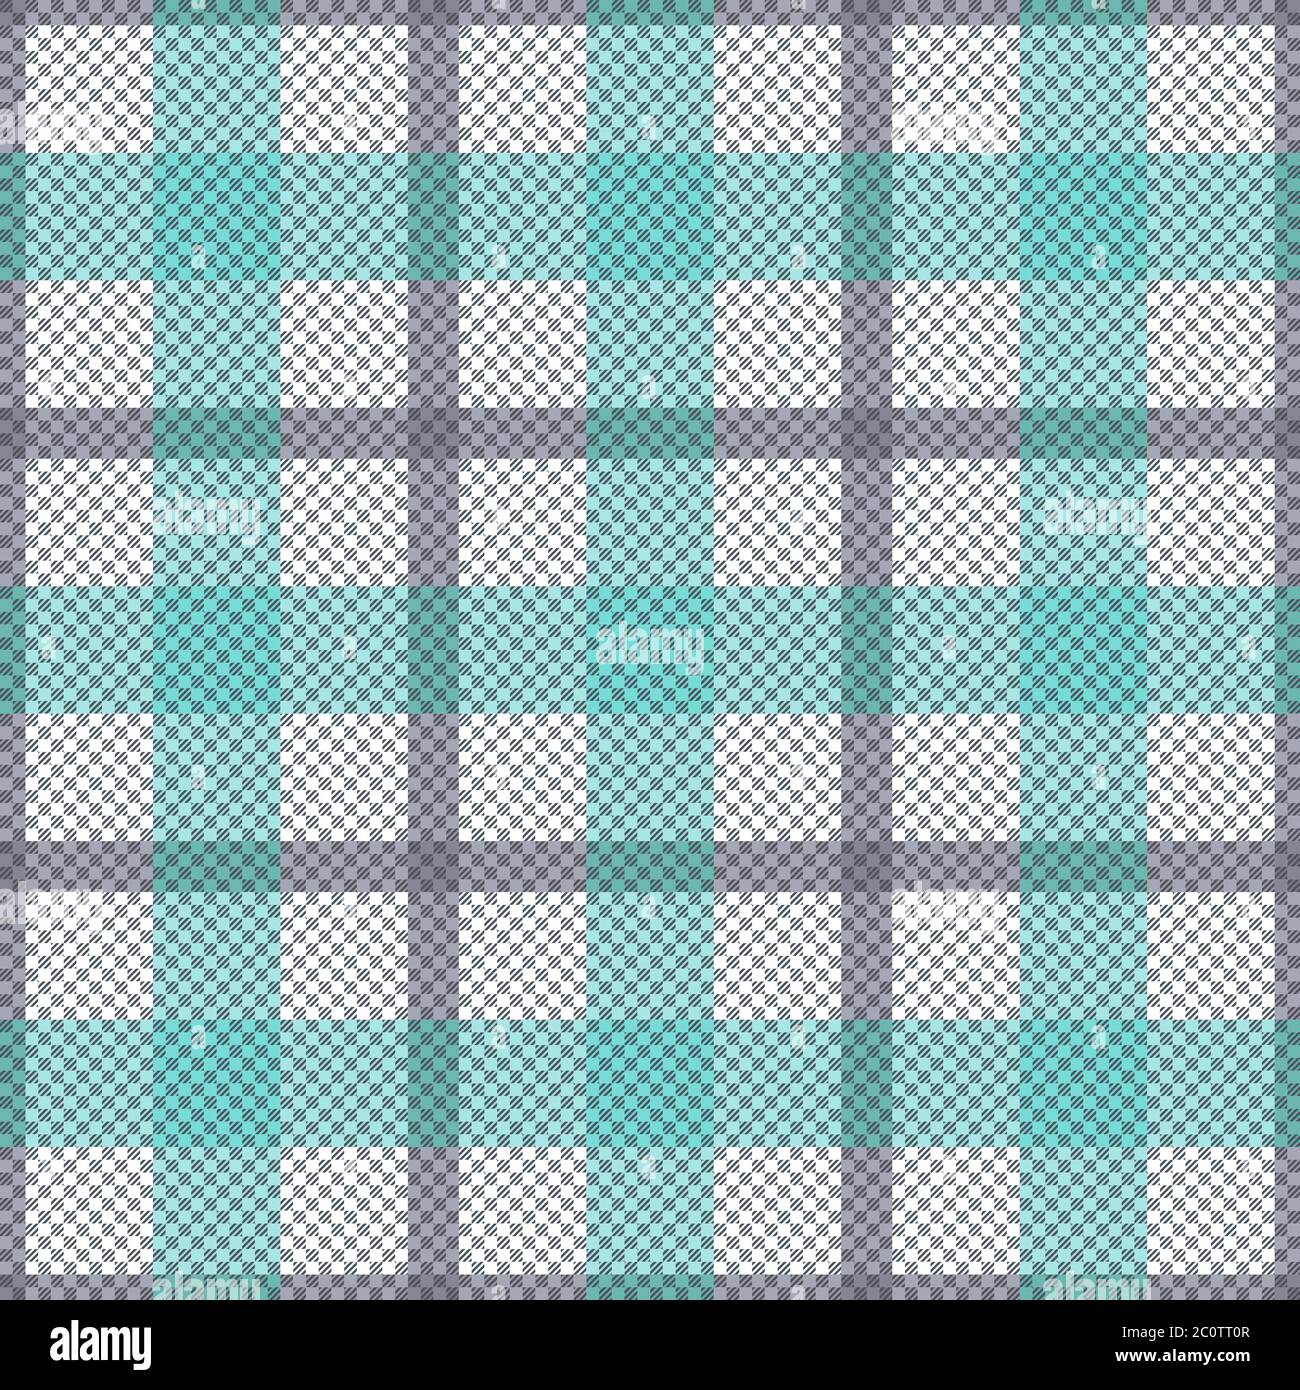 Tartan Scottish nahtlose Muster in hellen Farbtönen, Textur für Flanell Shirt, Karo, Tischdecken, Kleidung, Decken und andere Textilien Stock Vektor